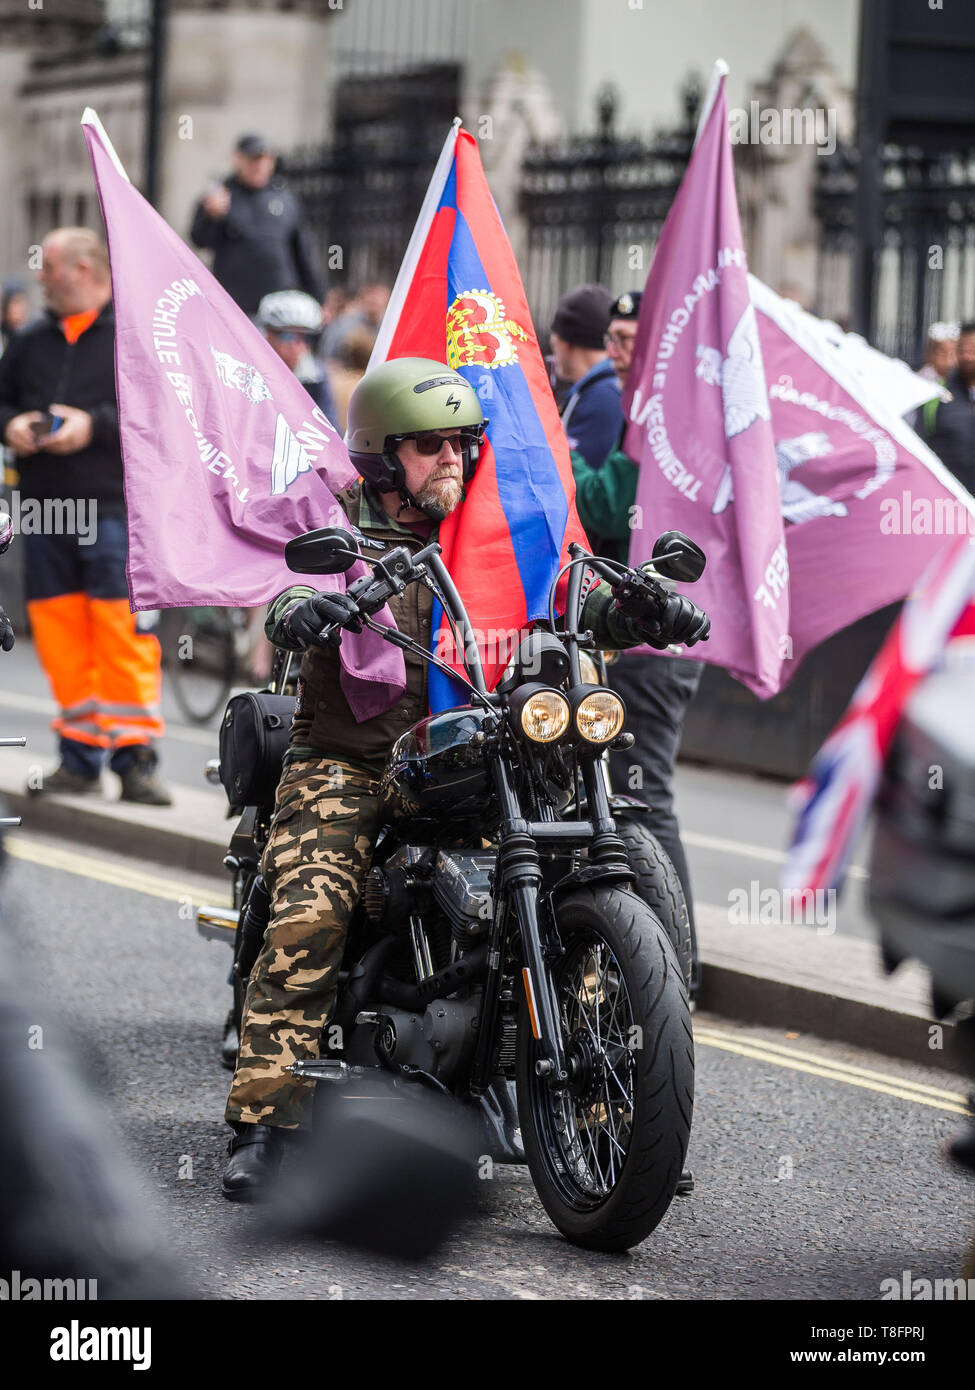 Les motocyclistes de partout au Royaume-Uni prendre part à Rolling Thunder, un tour à l'appui de Parachute Regiment soldier F face à des poursuites sur le Dimanche sanglant. Avec : Atmosphère, voir Où : London, Royaume-Uni Quand : 12 Avr 2019 Crédit : Wheatley/WENN Banque D'Images